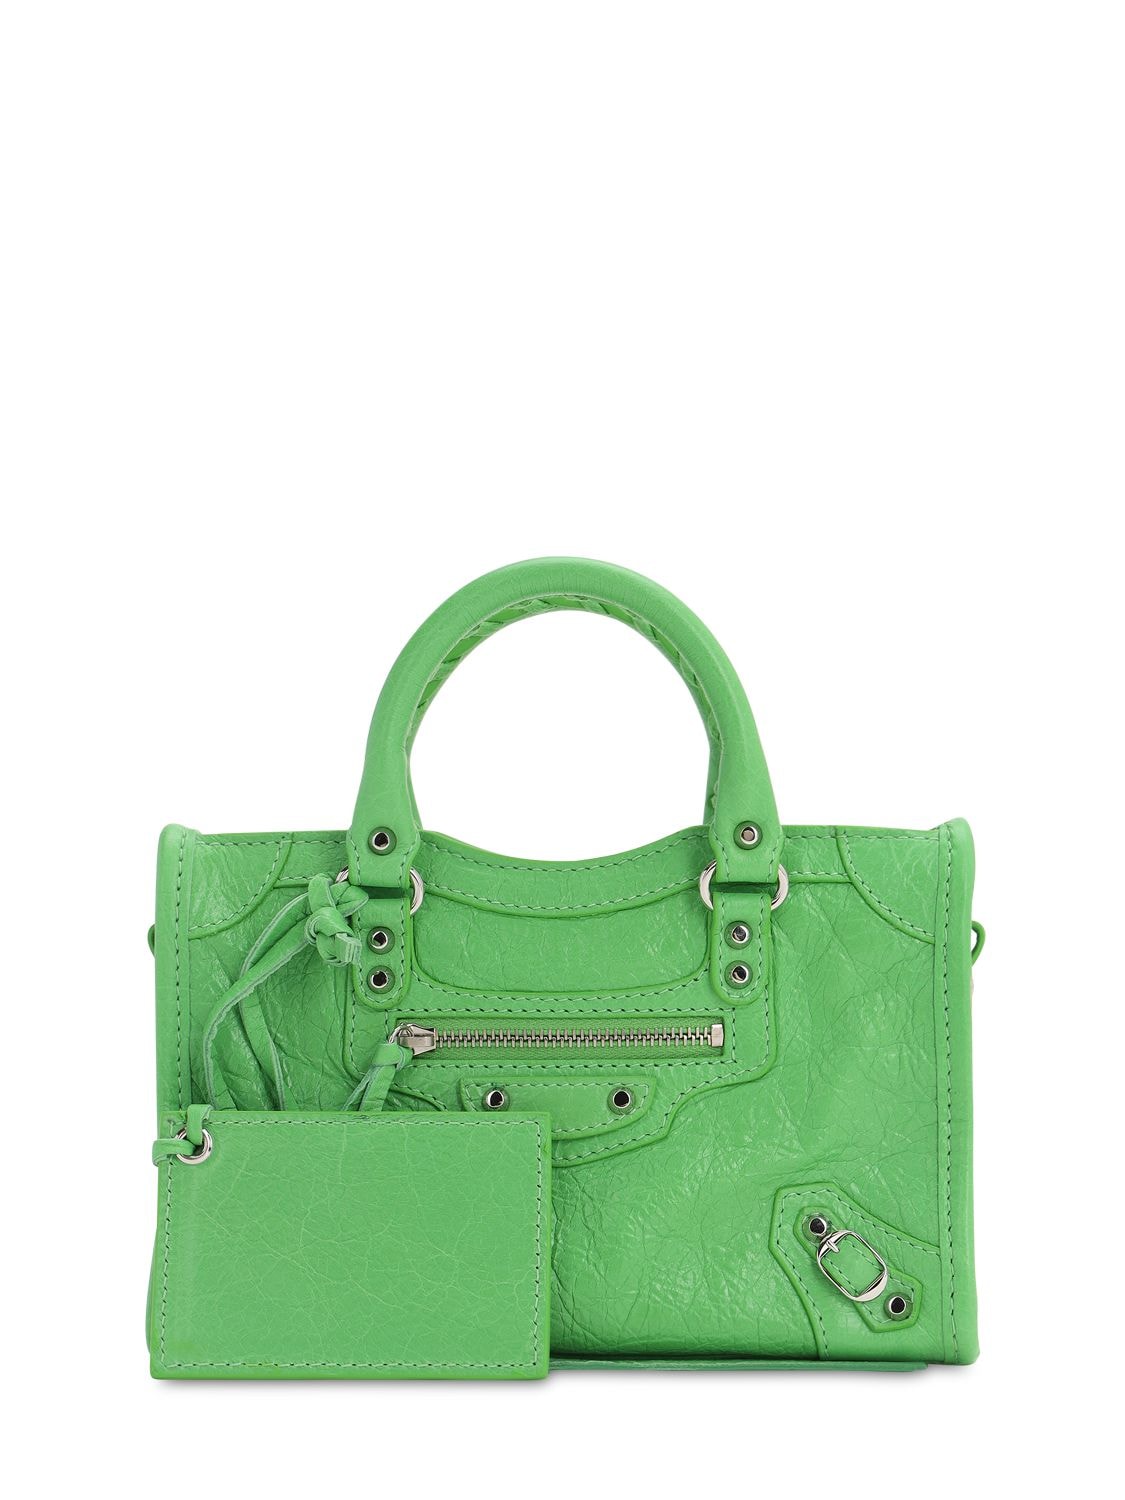 Balenciaga Nano City Leather Bag In Light Green